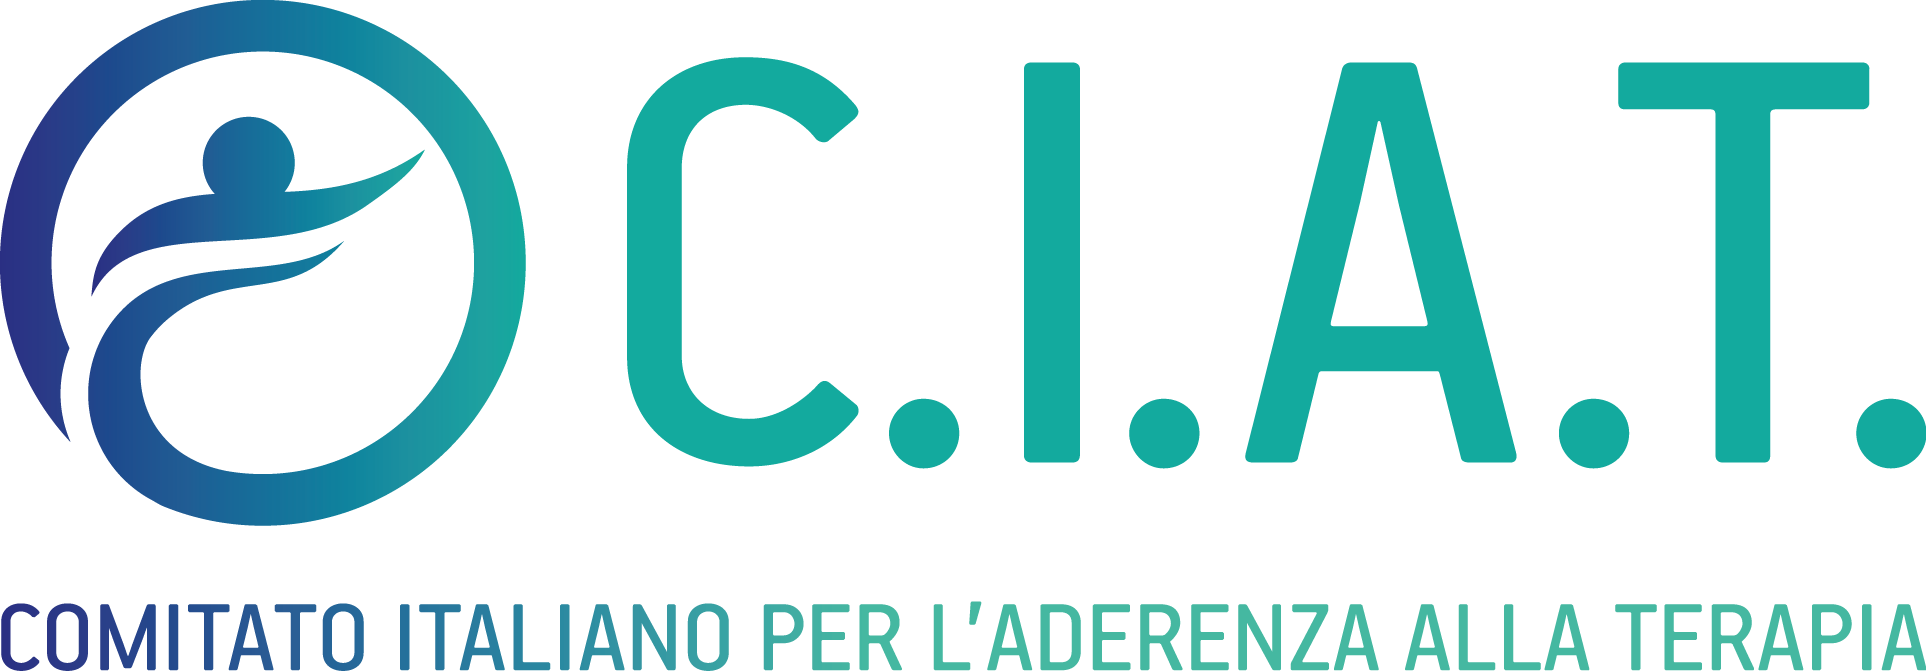 CIAT - Comitato Italiano per l'Aderenza alla Terapia